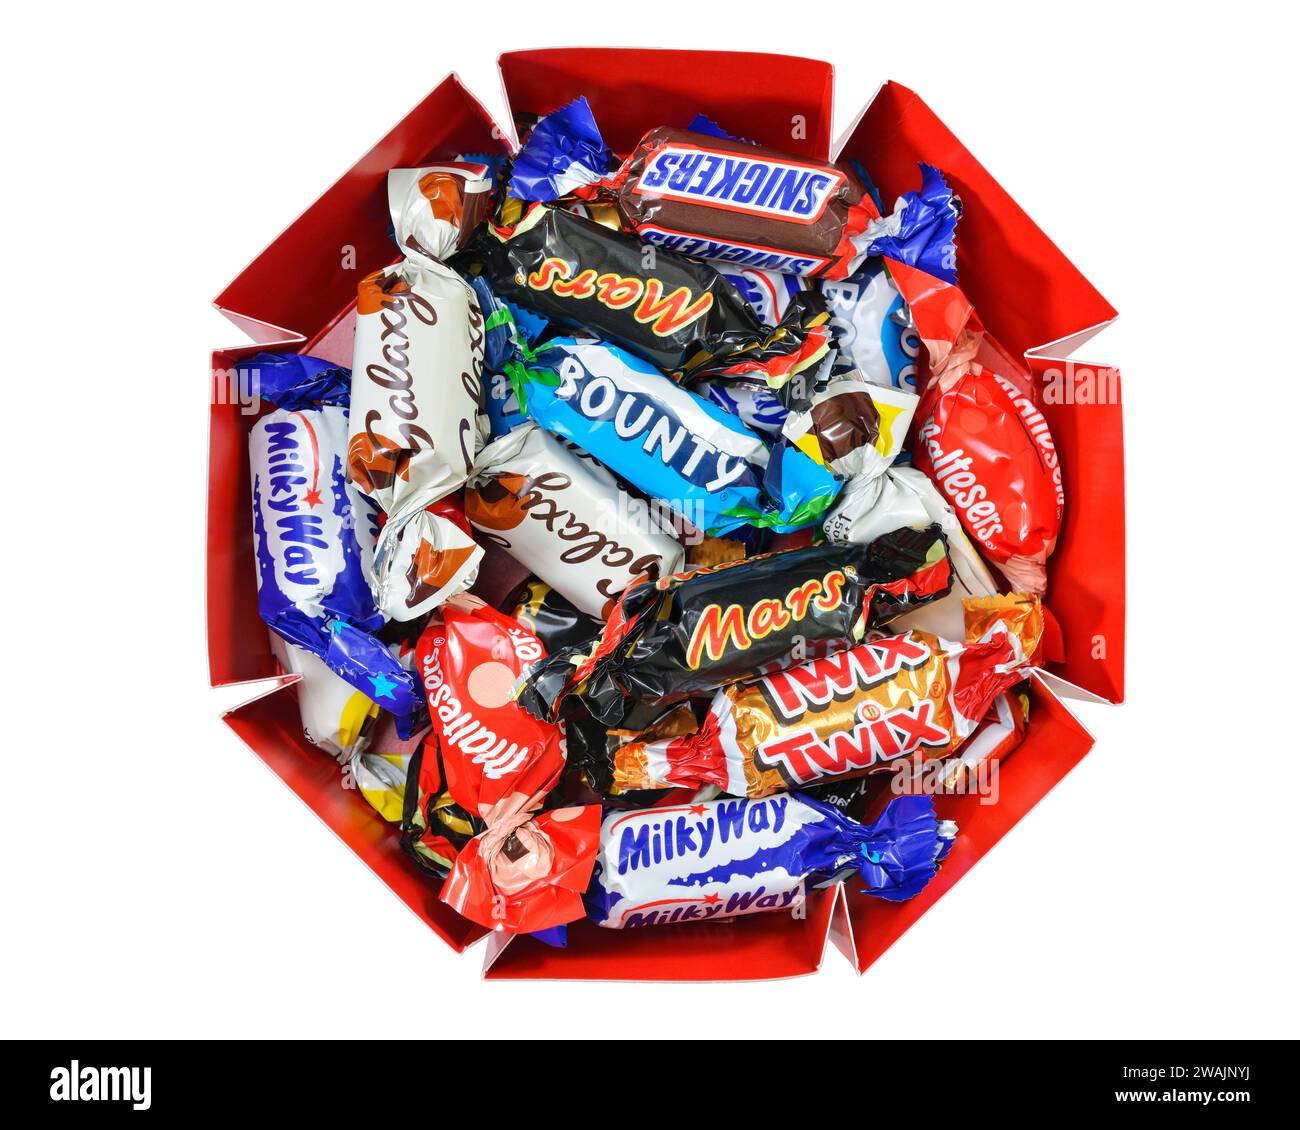 Confezione di cioccolatini Celebrations composta da versioni in miniatura dei marchi Marte a grandezza naturale, Regno Unito Foto Stock